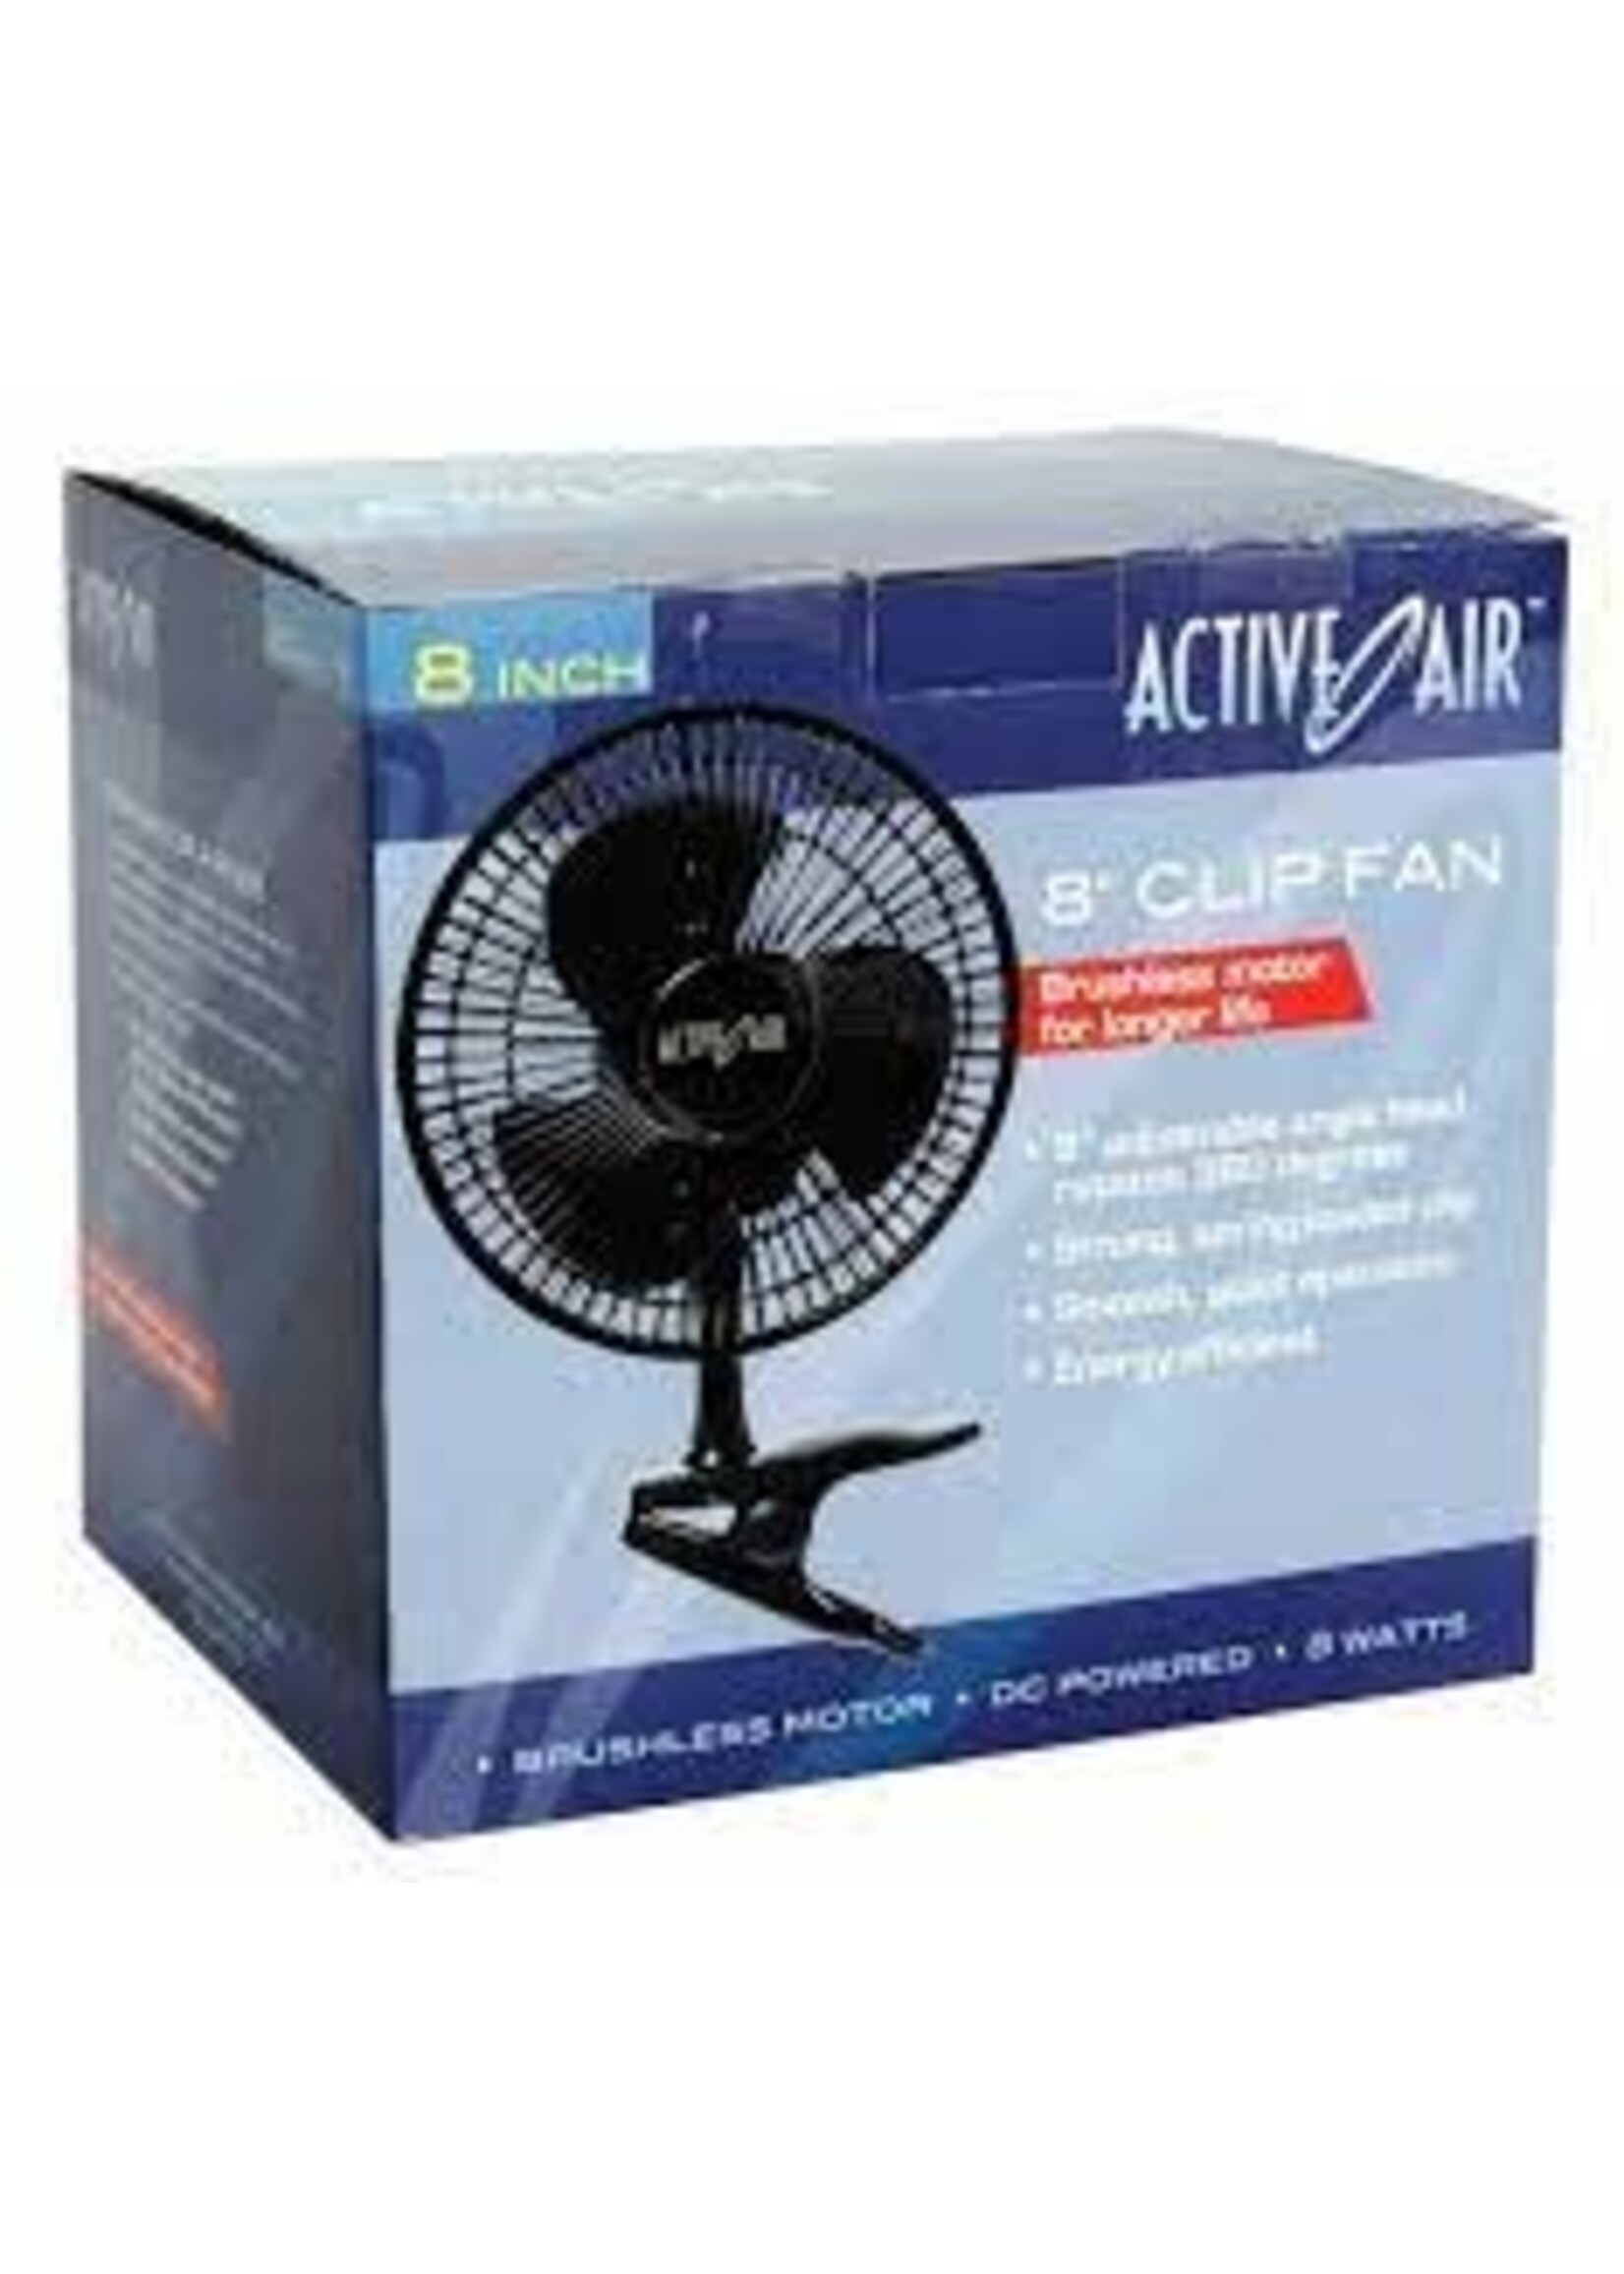 Active Air Active Air 8" Clip Fan, 7.5W